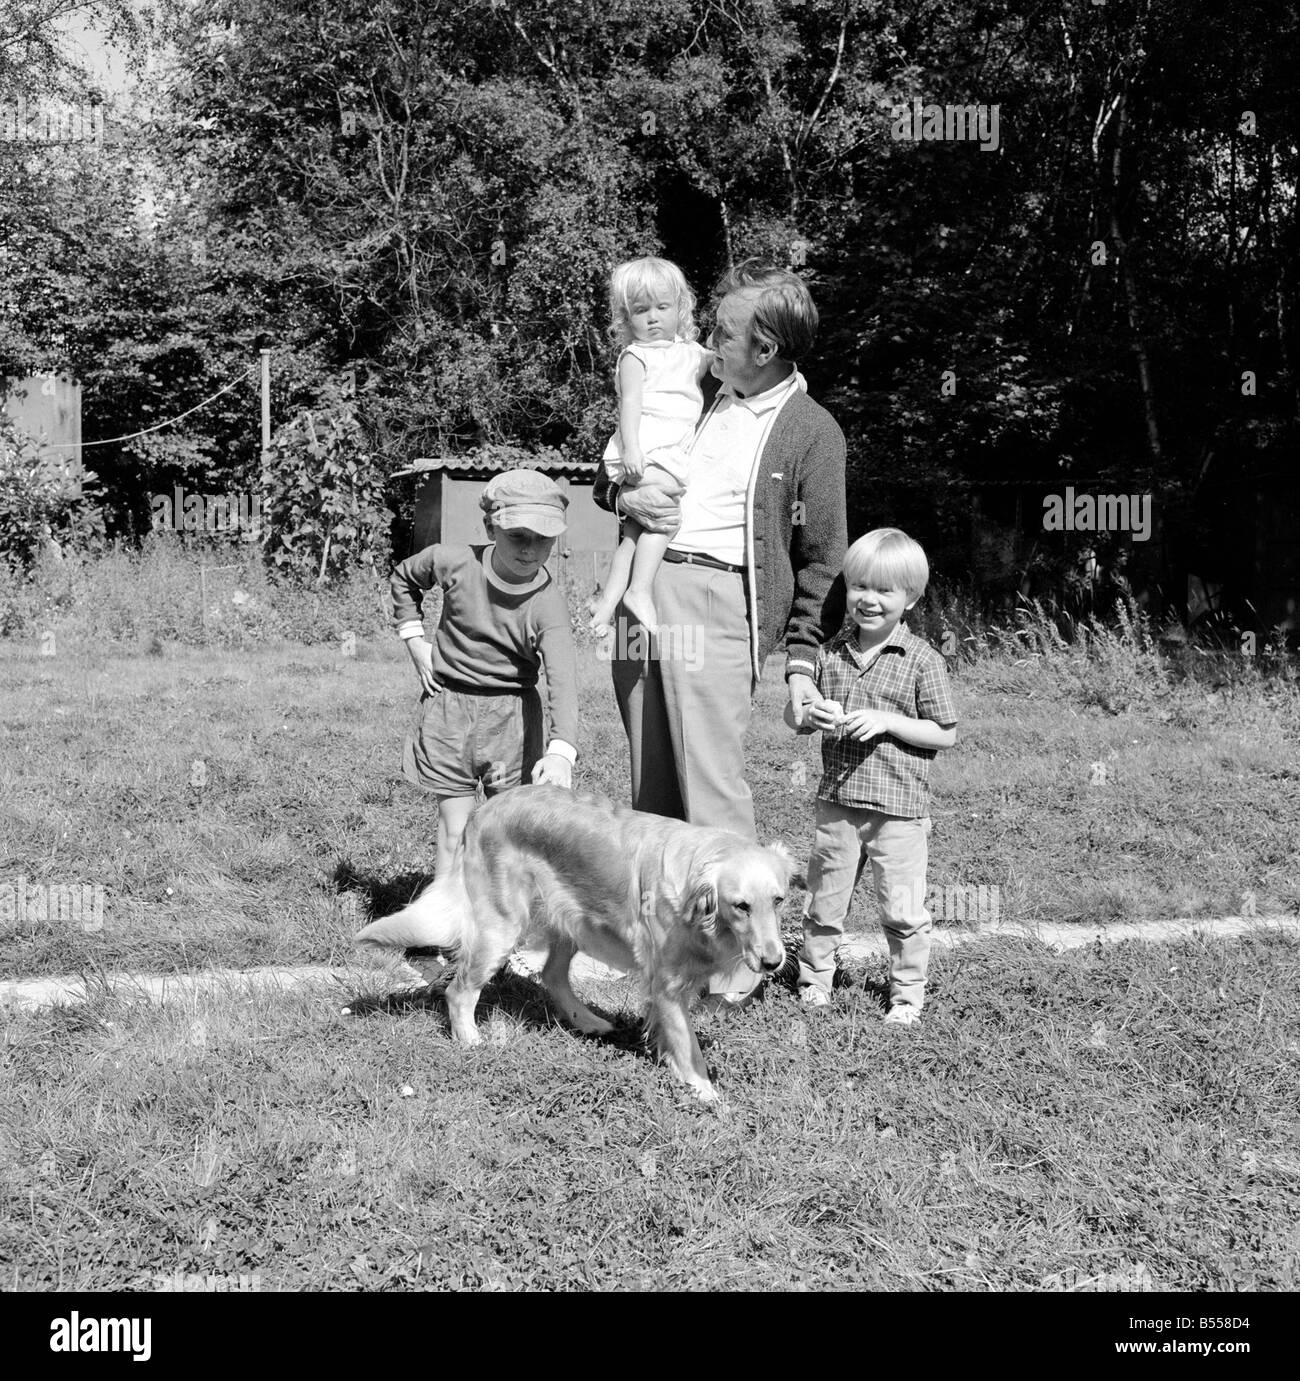 Johnny Speight TV Drehbuchautor in seinem Haus in Northwood mit seiner Familie Kindern Hund liebevoll mit Blick auf seine Kinder Zuneigung Liebe Daily Mirror granadamedia0805 Stockfoto